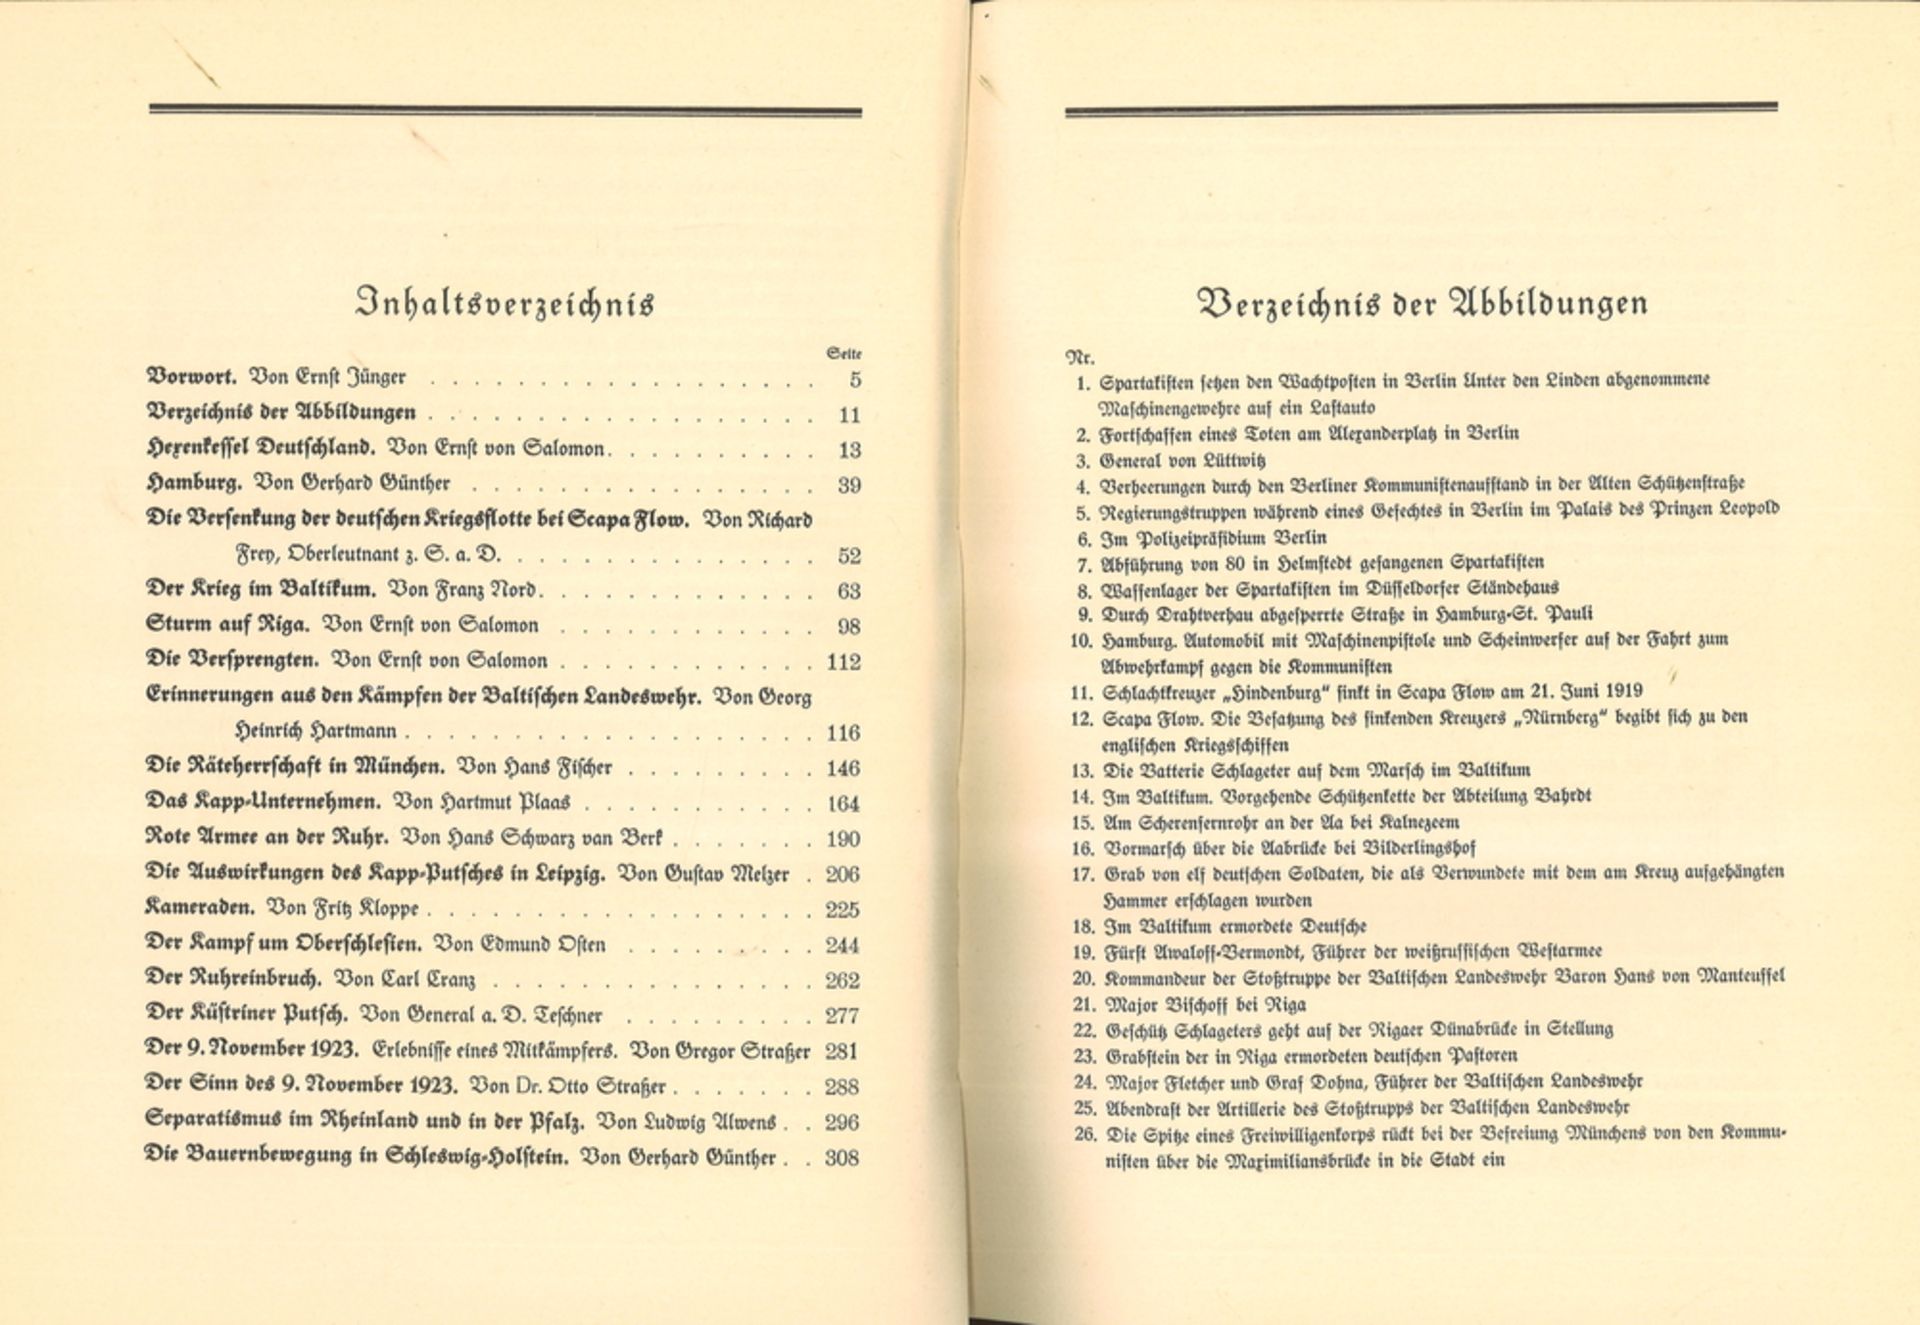 Buch "Der Kampf um das Reich" um 1930, herausgegeben von Ernst Jünger, gebunden, 314 Seiten, mit - Image 2 of 2